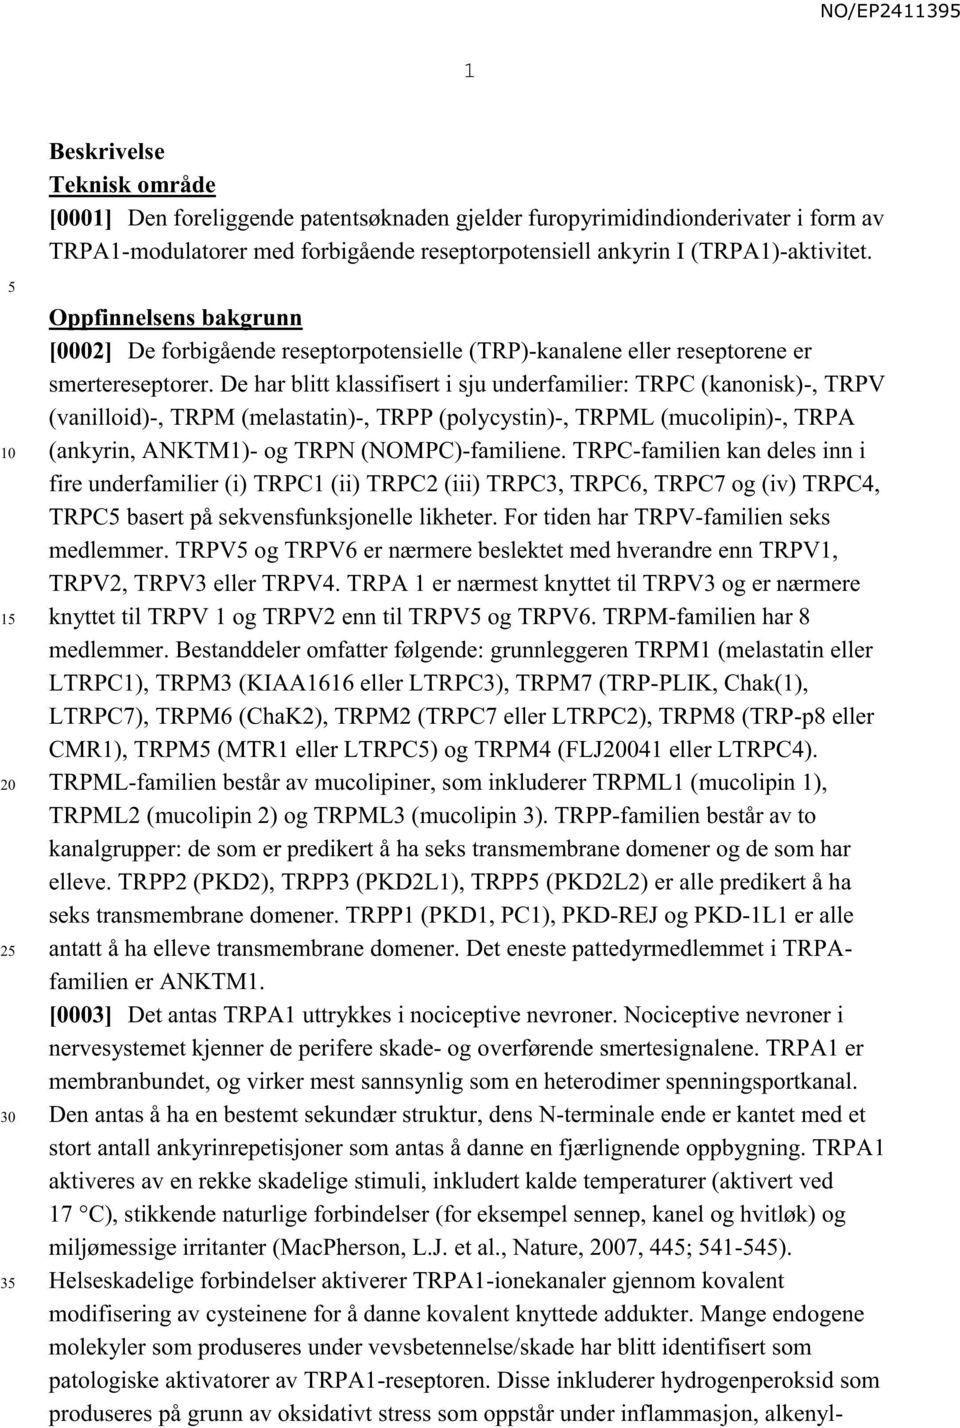 De har blitt klassifisert i sju underfamilier: TRPC (kanonisk)-, TRPV (vanilloid)-, TRPM (melastatin)-, TRPP (polycystin)-, TRPML (mucolipin)-, TRPA (ankyrin, ANKTM1)- og TRPN (NOMPC)-familiene.